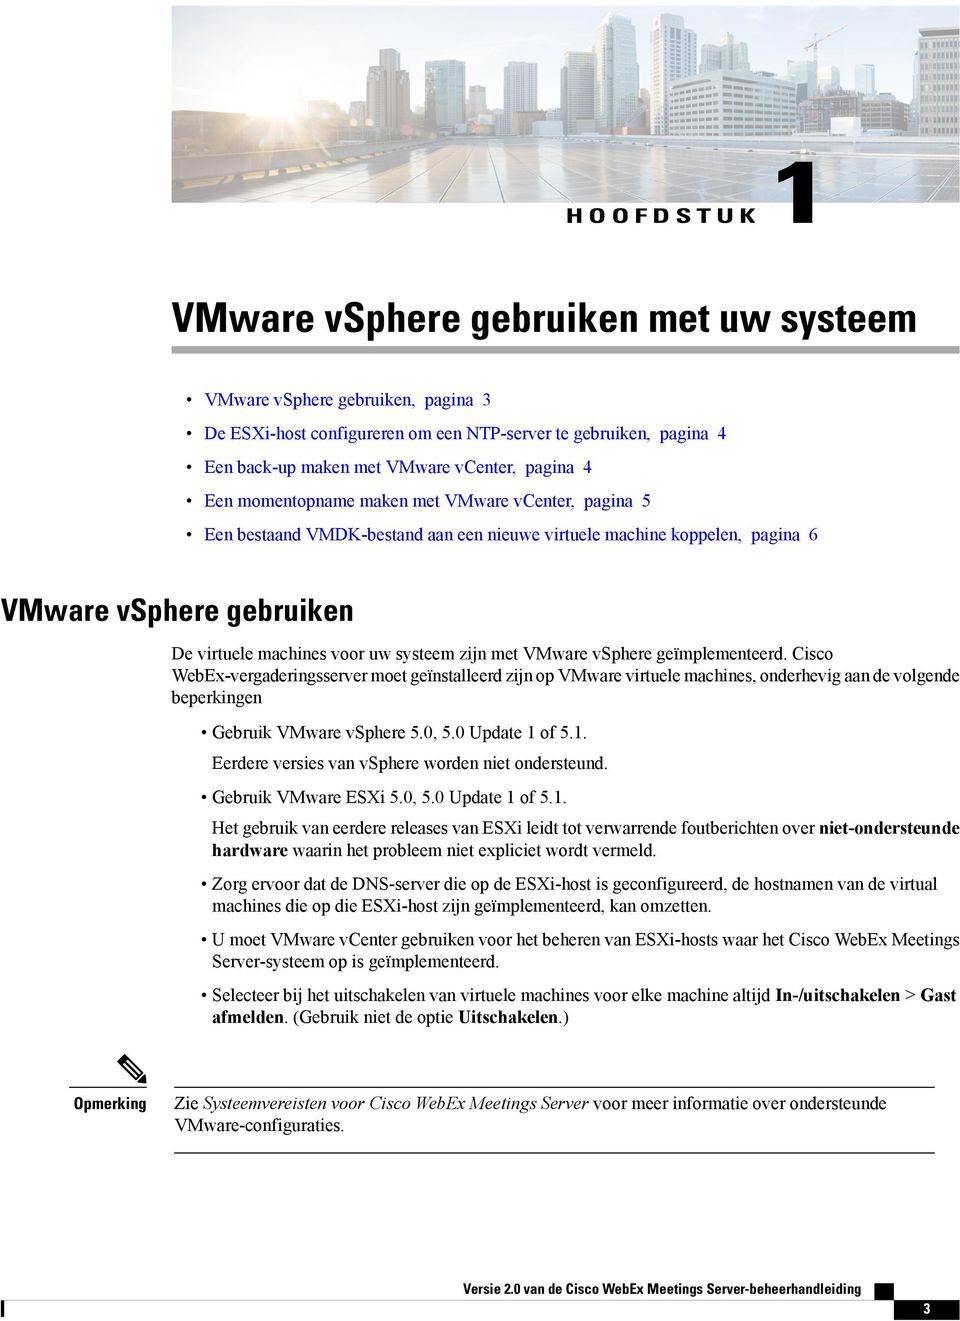 met VMware vsphere geïmplementeerd. Cisco WebEx-vergaderingsserver moet geïnstalleerd zijn op VMware virtuele machines, onderhevig aan de volgende beperkingen Gebruik VMware vsphere 5.0, 5.